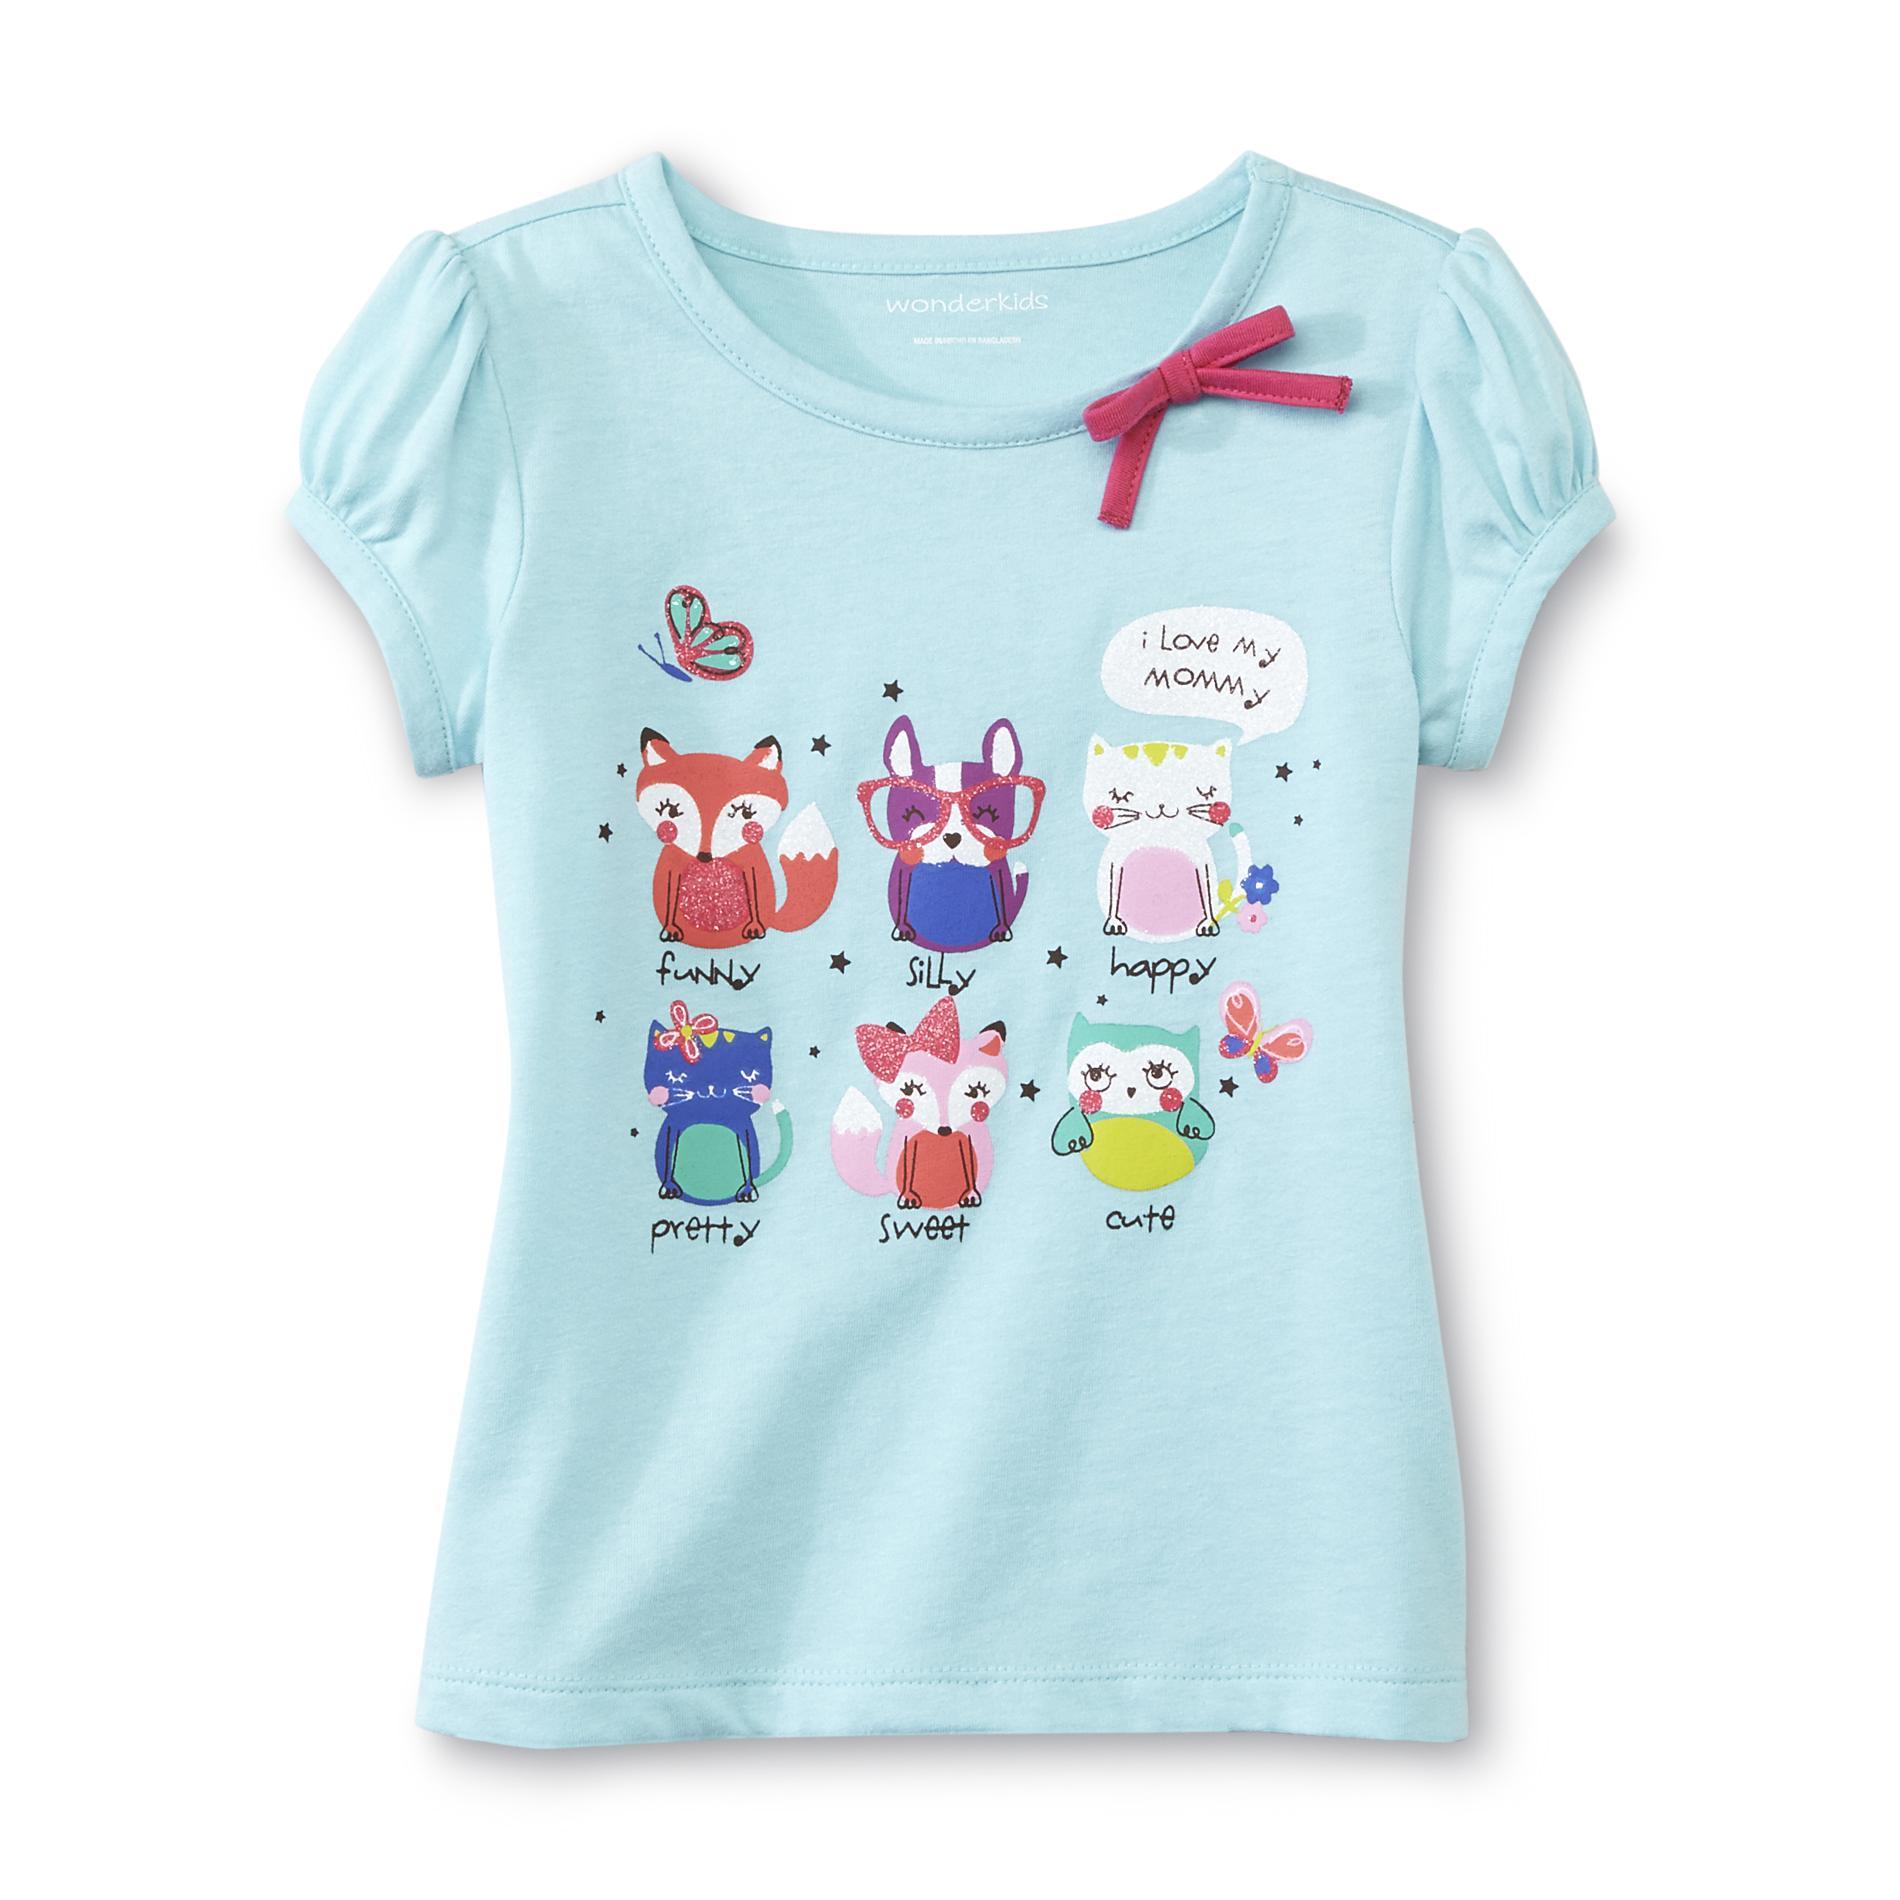 WonderKids Infant & Toddler Girl's Short-Sleeve T-Shirt - I Love Mommy